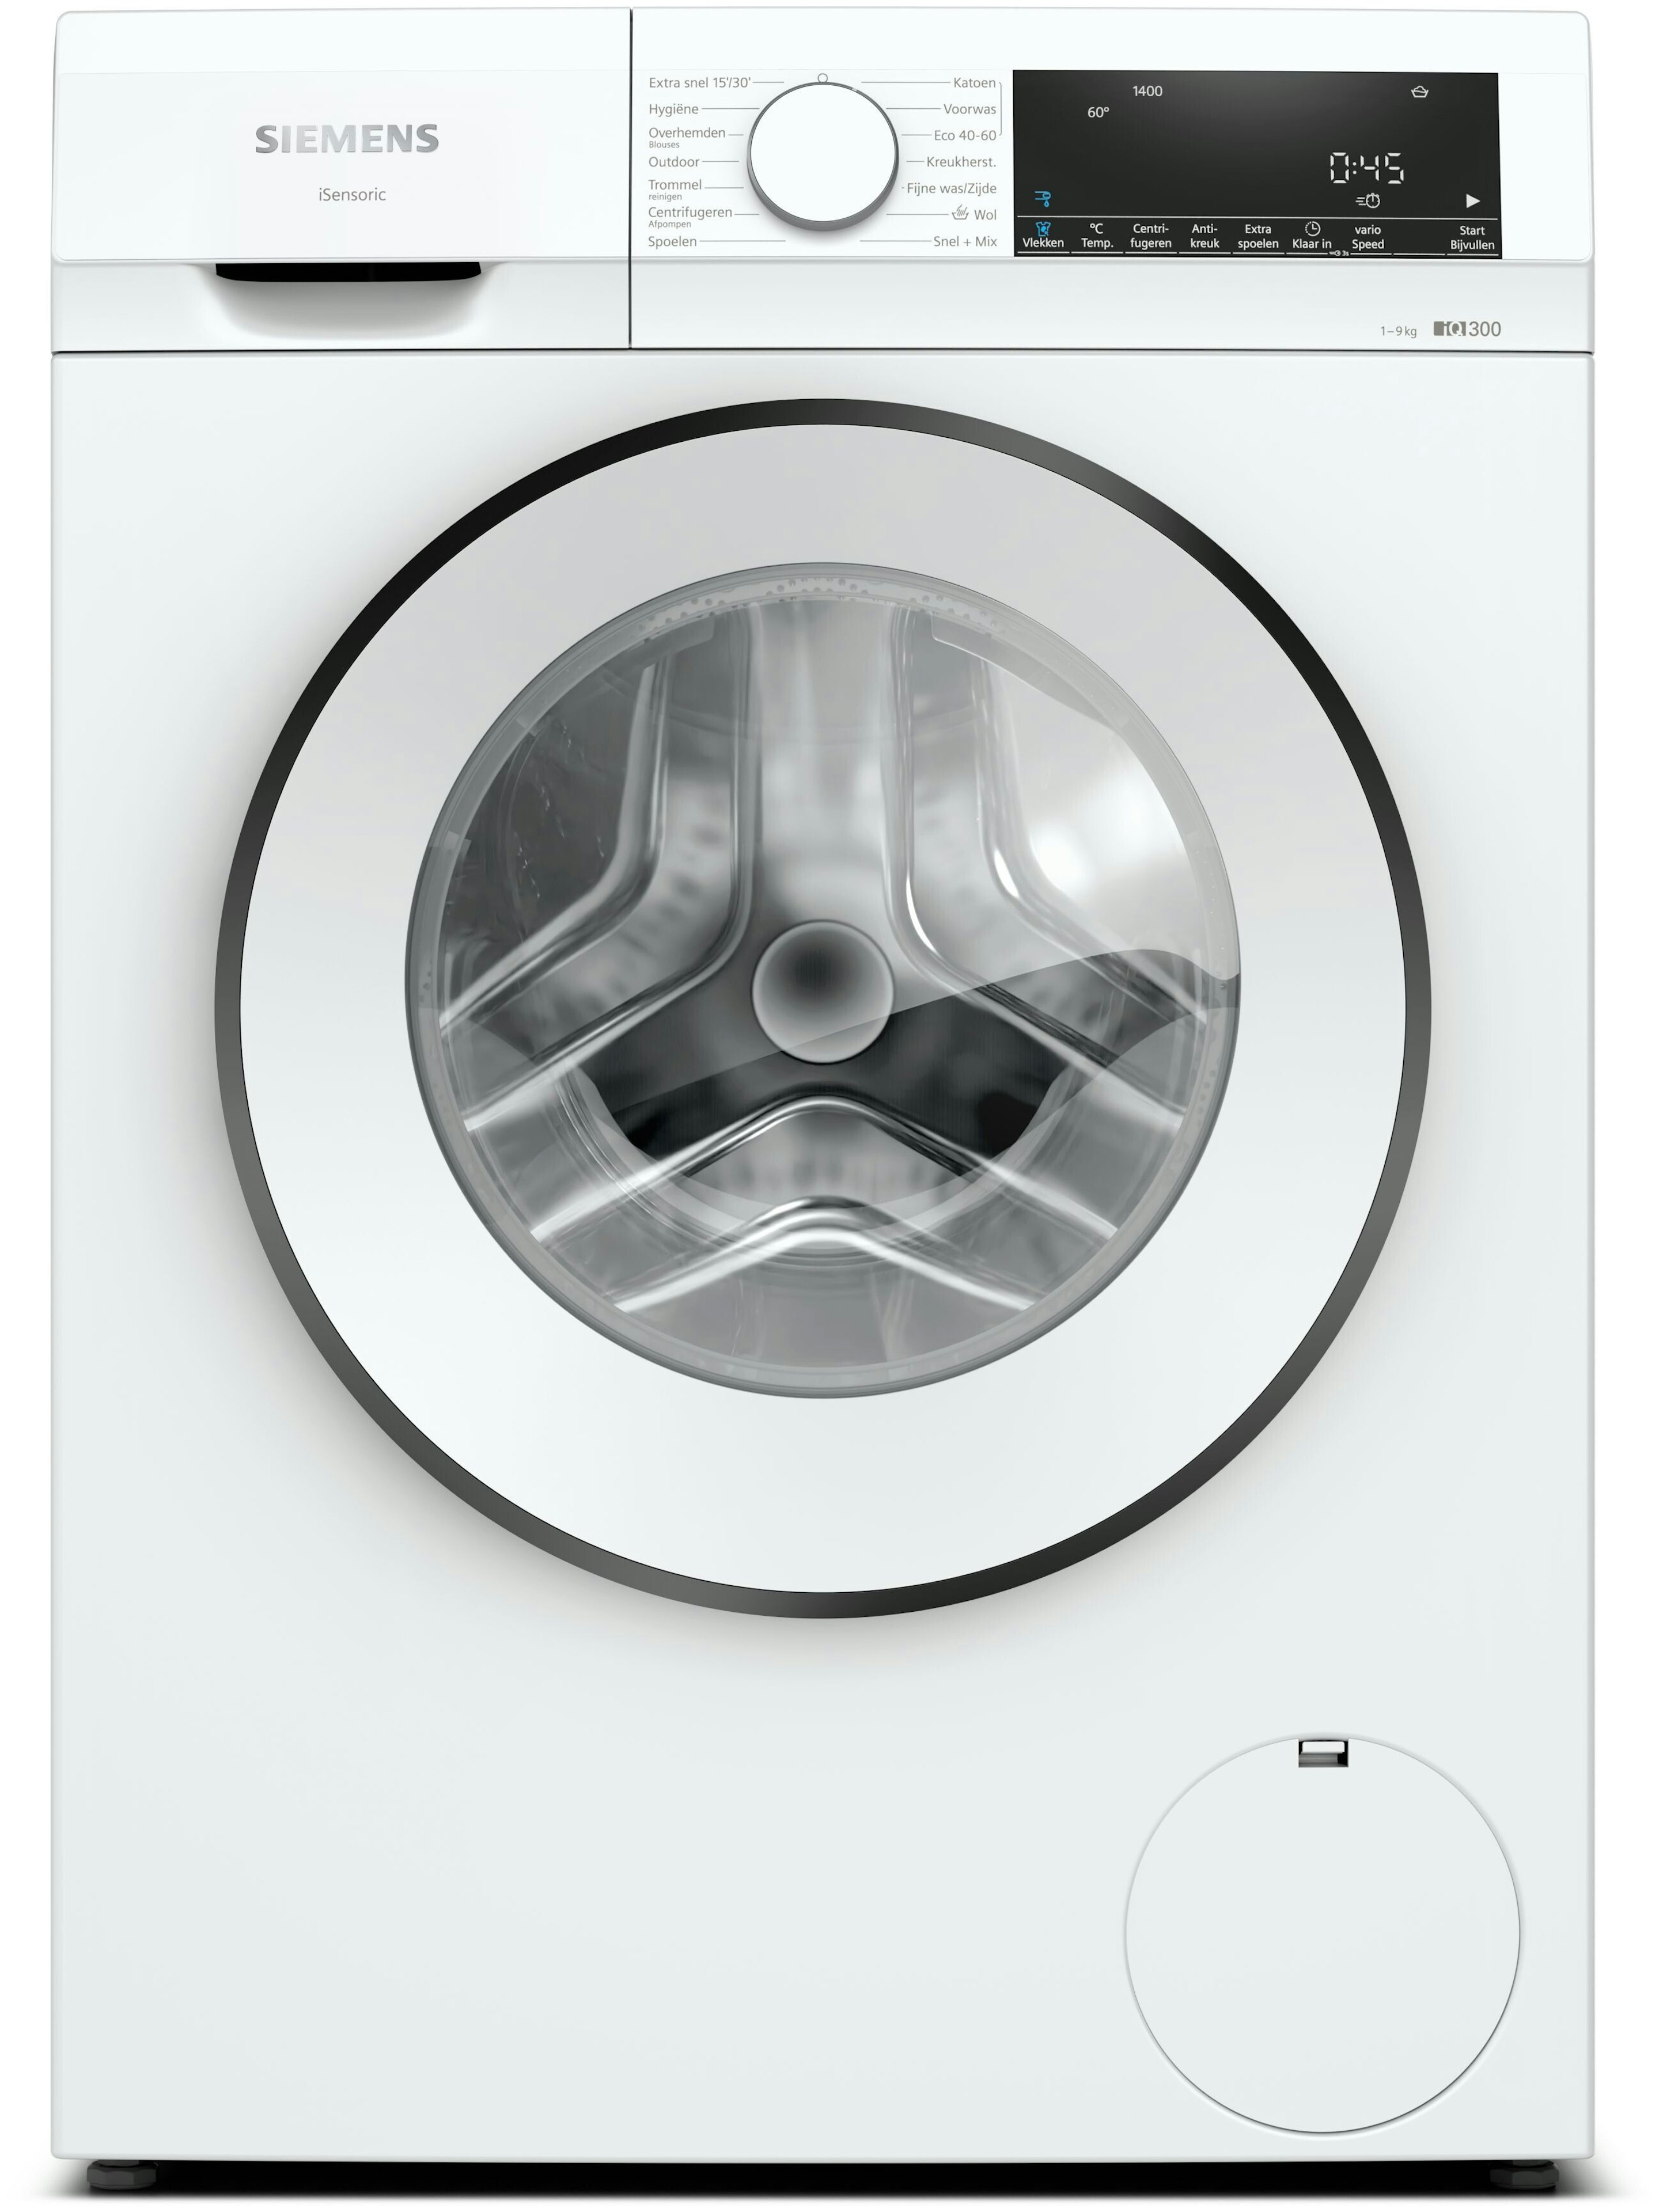 Bemiddelaar Legacy Vet Wasmachine 1400 toeren kopen? - Voordelig bij Bemmel & Kroon!